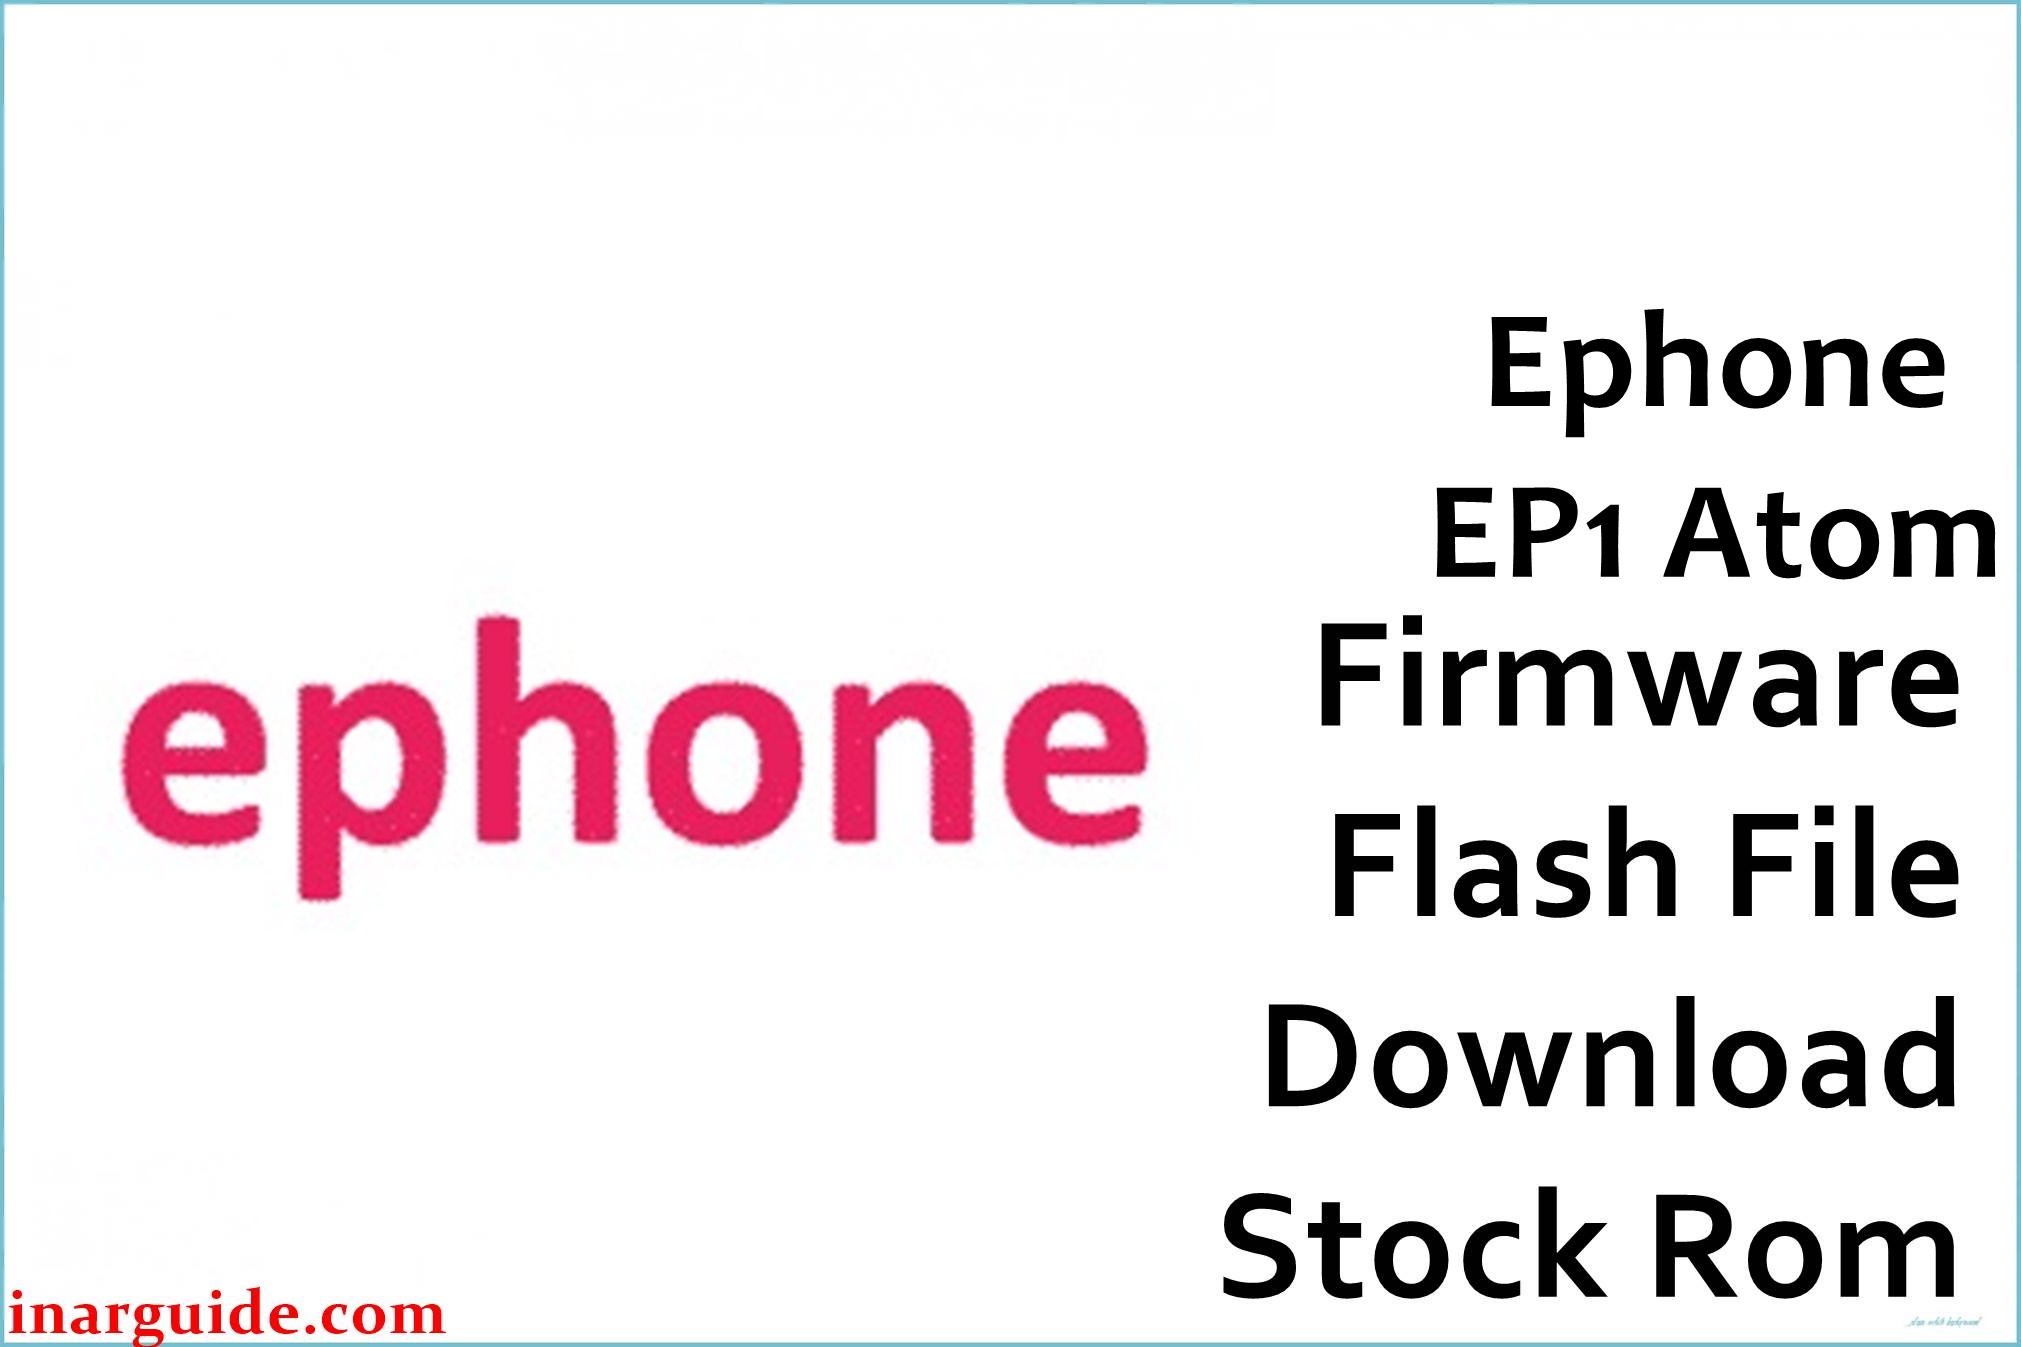 Ephone EP1 Atom